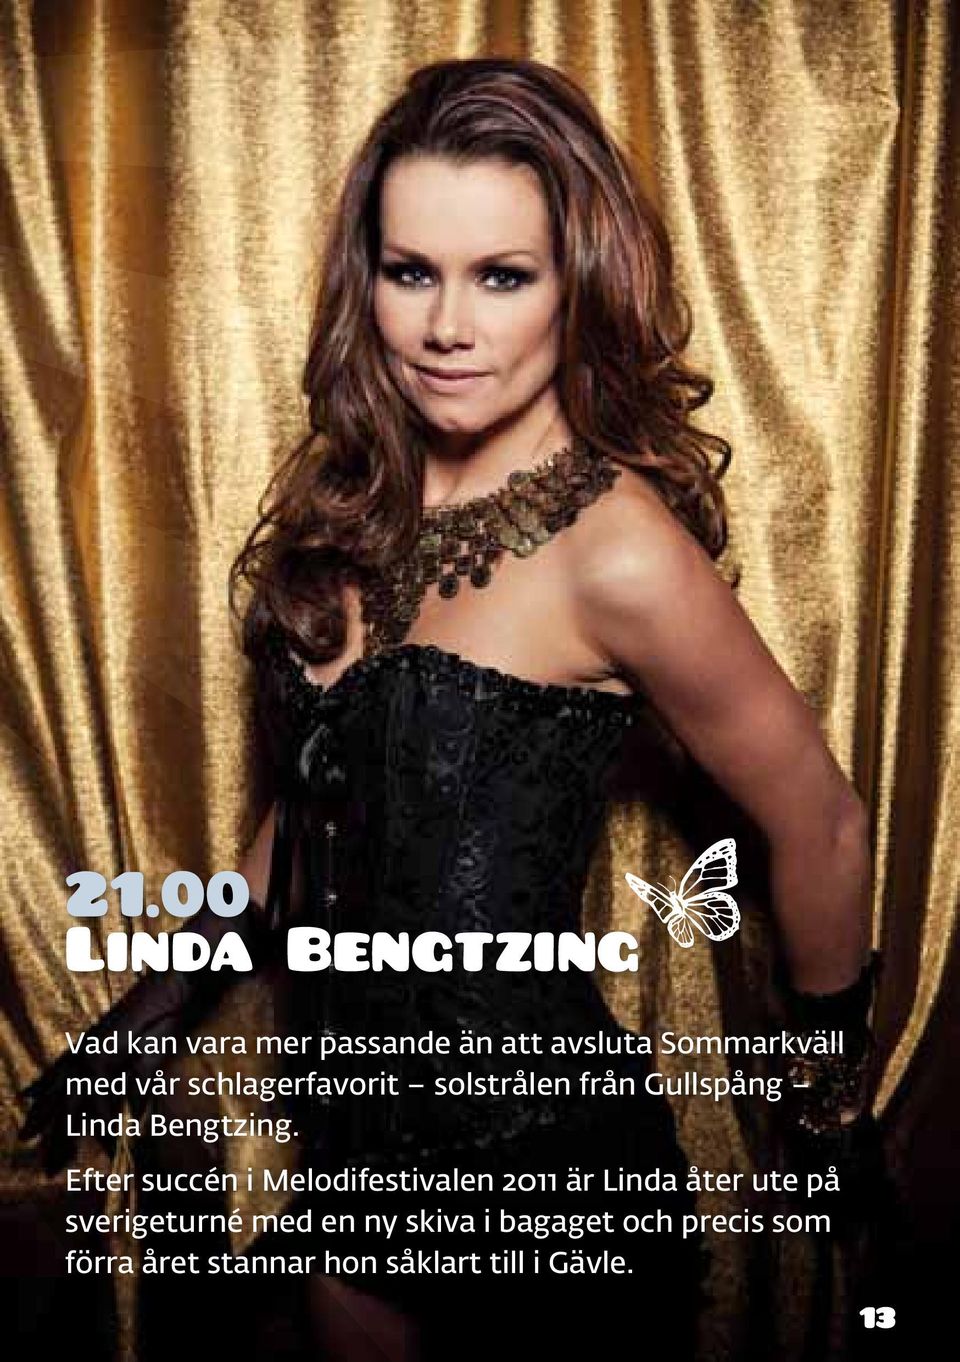 Efter succén i Melodifestivalen 2011 är Linda åter ute på sverigeturné med